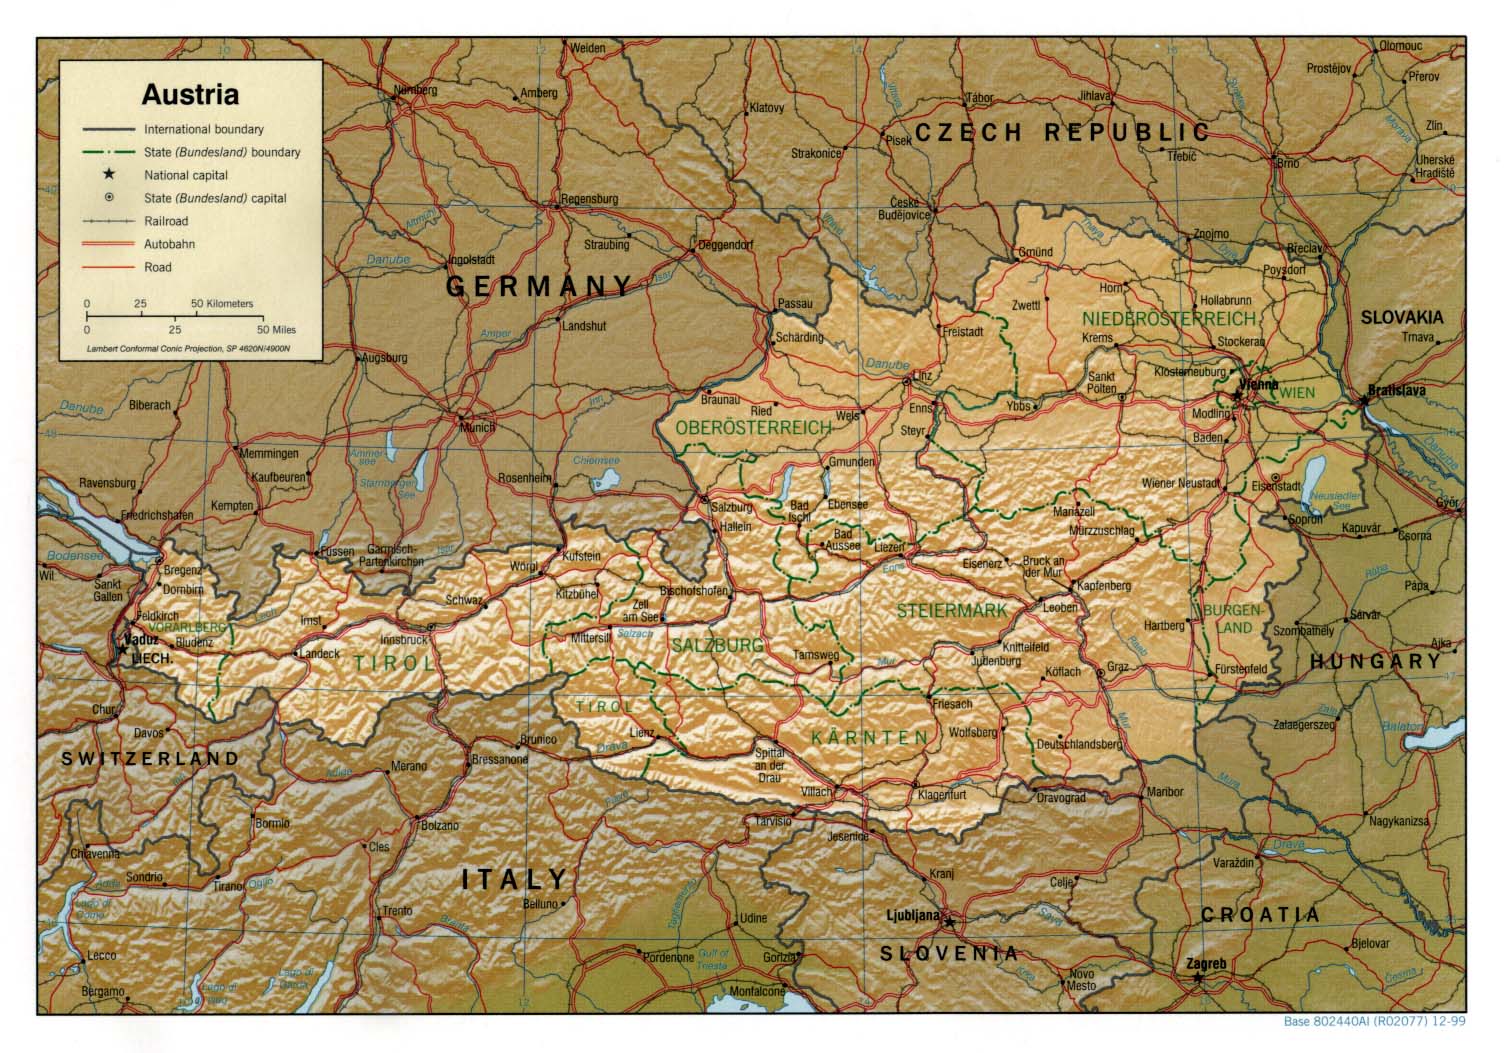 ausztria térkép salzburg Ausztria térkép lap   Megbízható válaszok profiktól ausztria térkép salzburg